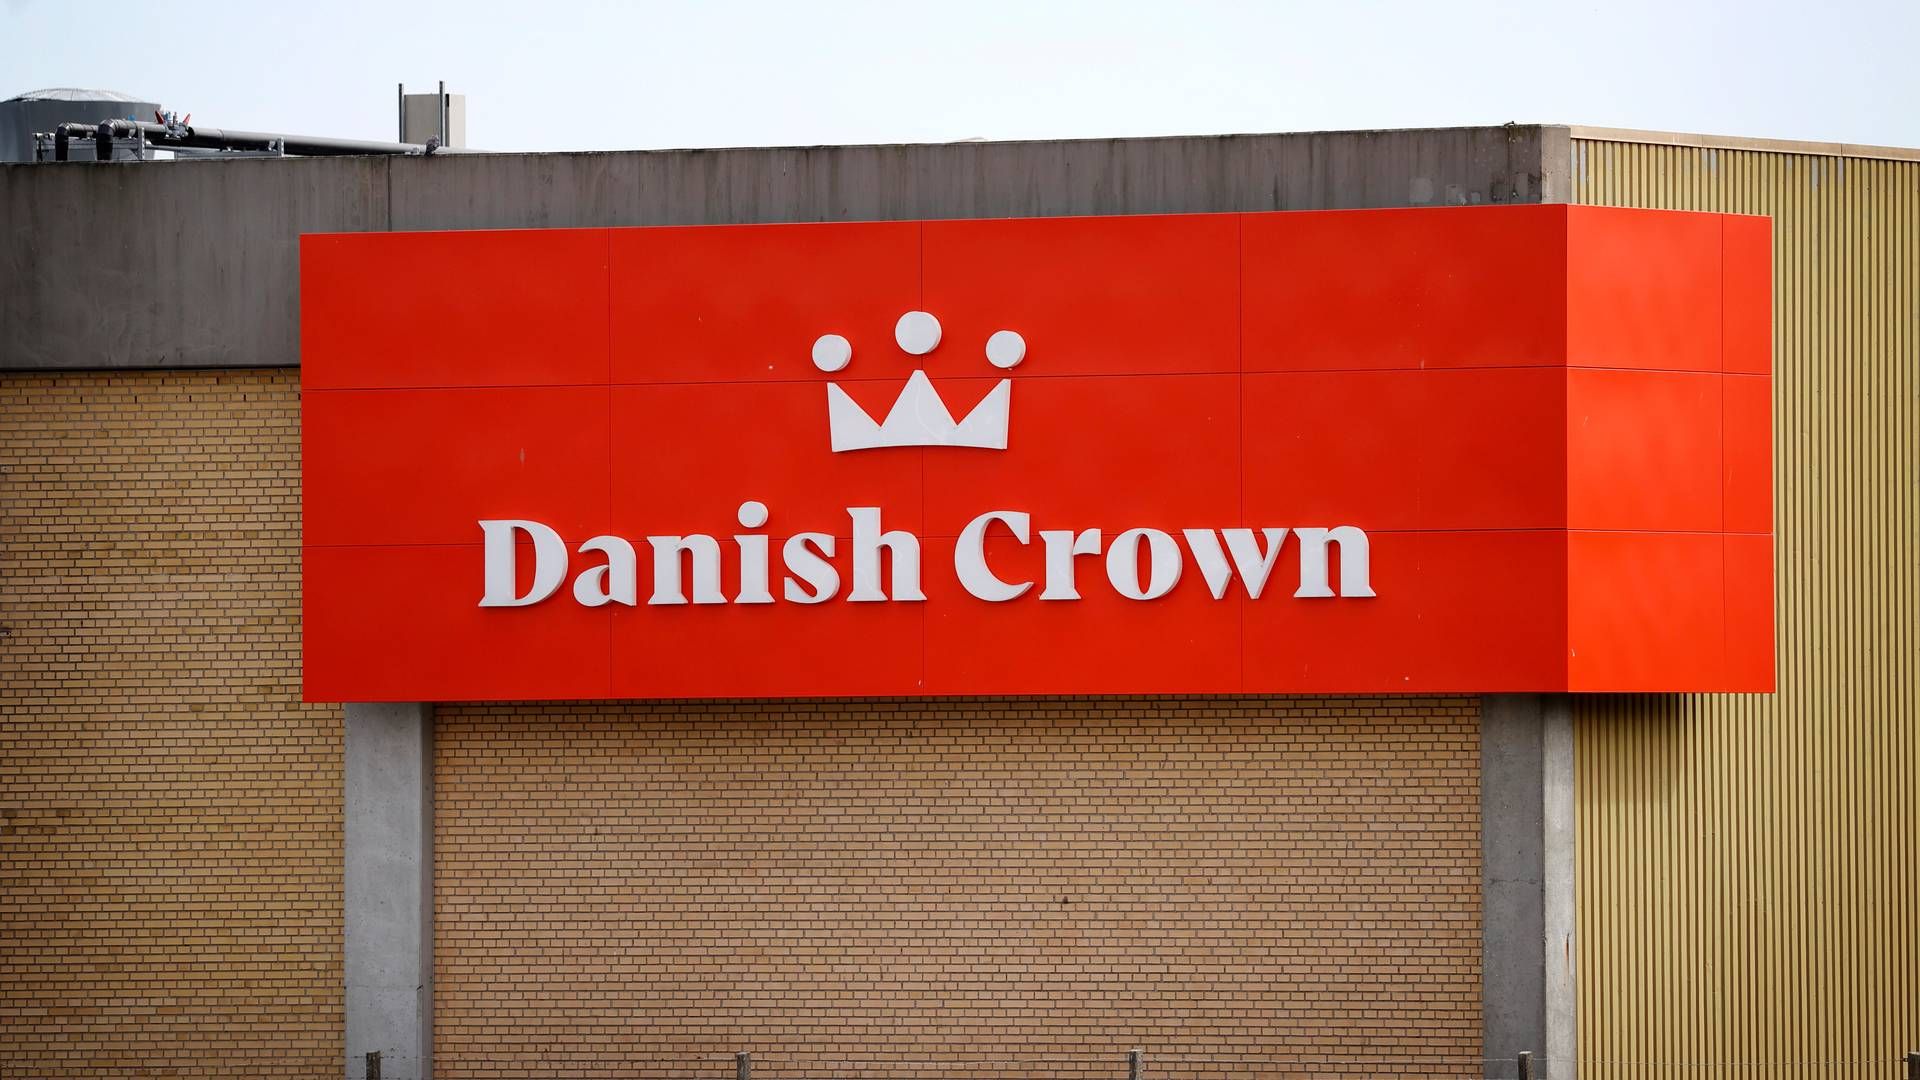 Det andelsejede slagteri Danish Crown fik sidste uge ny bestyrelse. Arkivfoto.